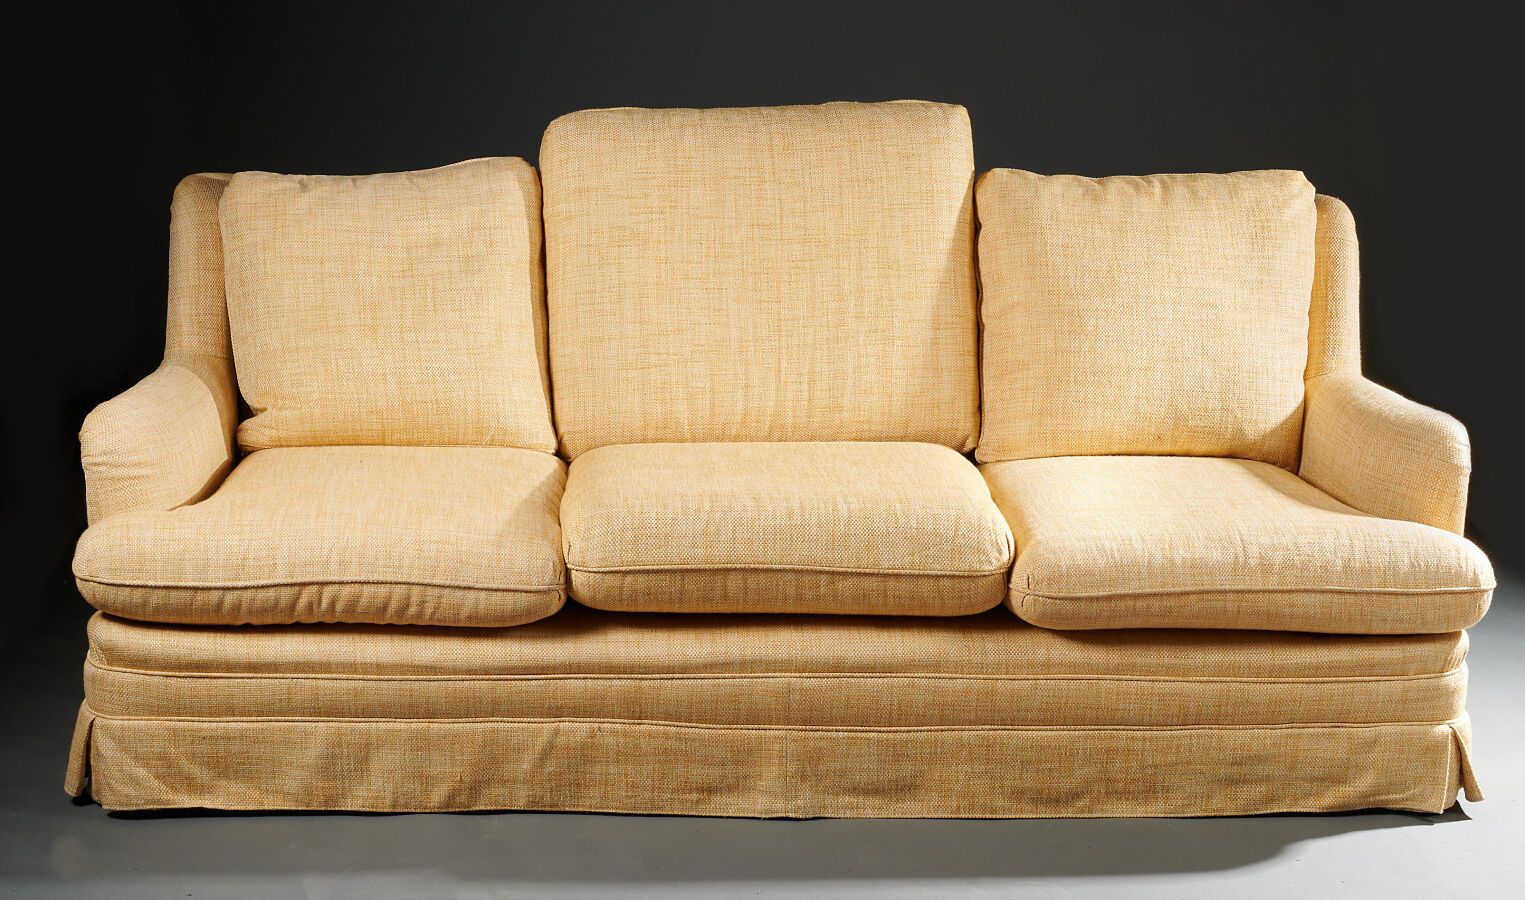 Null 米色-橙色面料的三座沙发（一个不同型号的背垫，有使用痕迹）。

高度：75厘米 - 宽度：190厘米 - 深度：64厘米